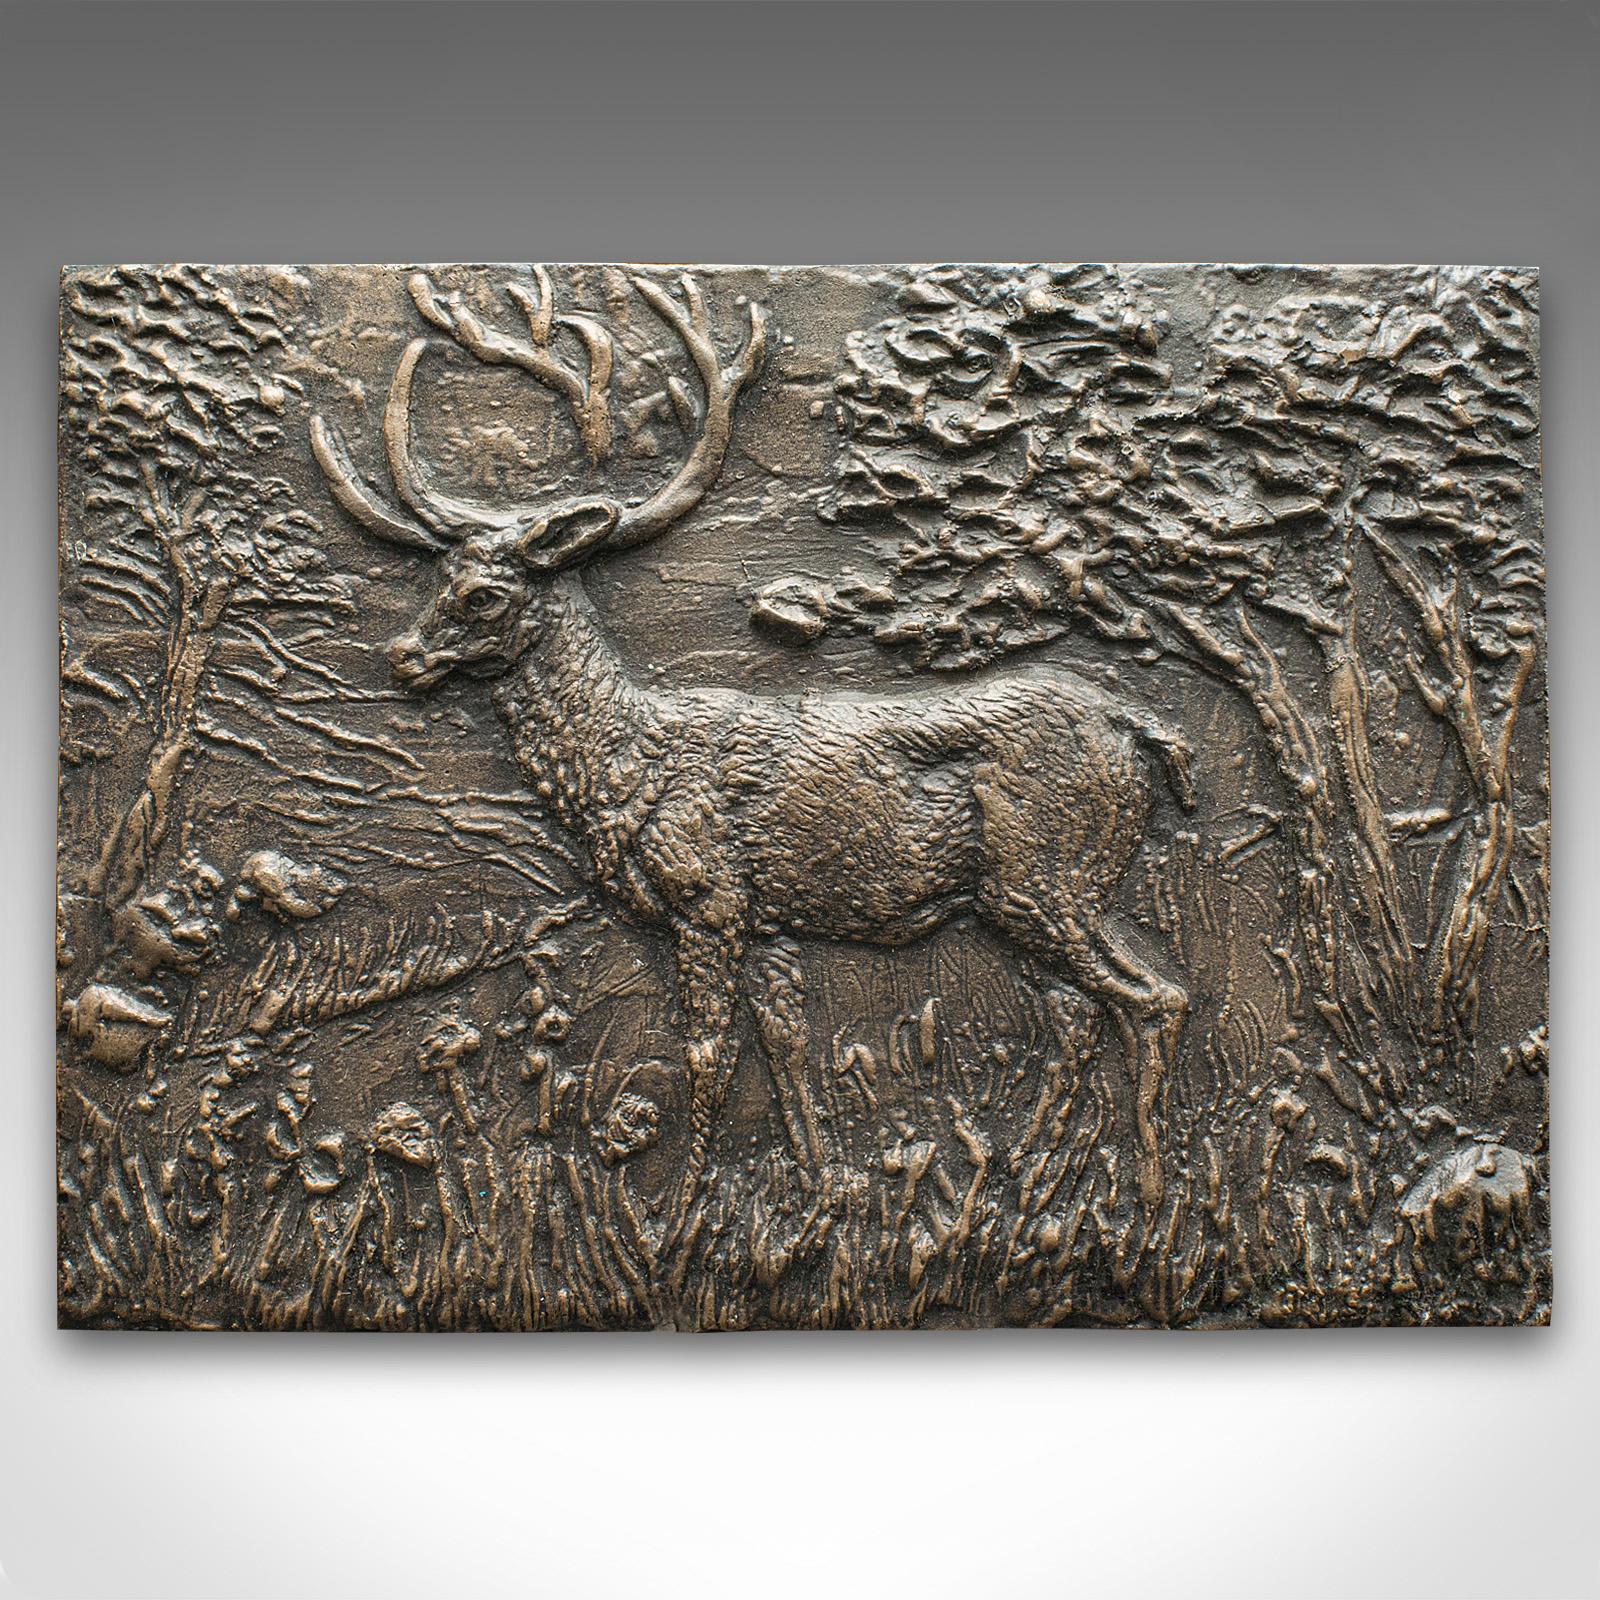 Il s'agit d'une plaque en relief en forme de cerf vintage. Plaque décorative anglaise en bronze, datant du milieu du 20e siècle, vers 1950.

Aspect délicieusement usé par les intempéries avec un attrait de maison de campagne
Patine d'ancienneté